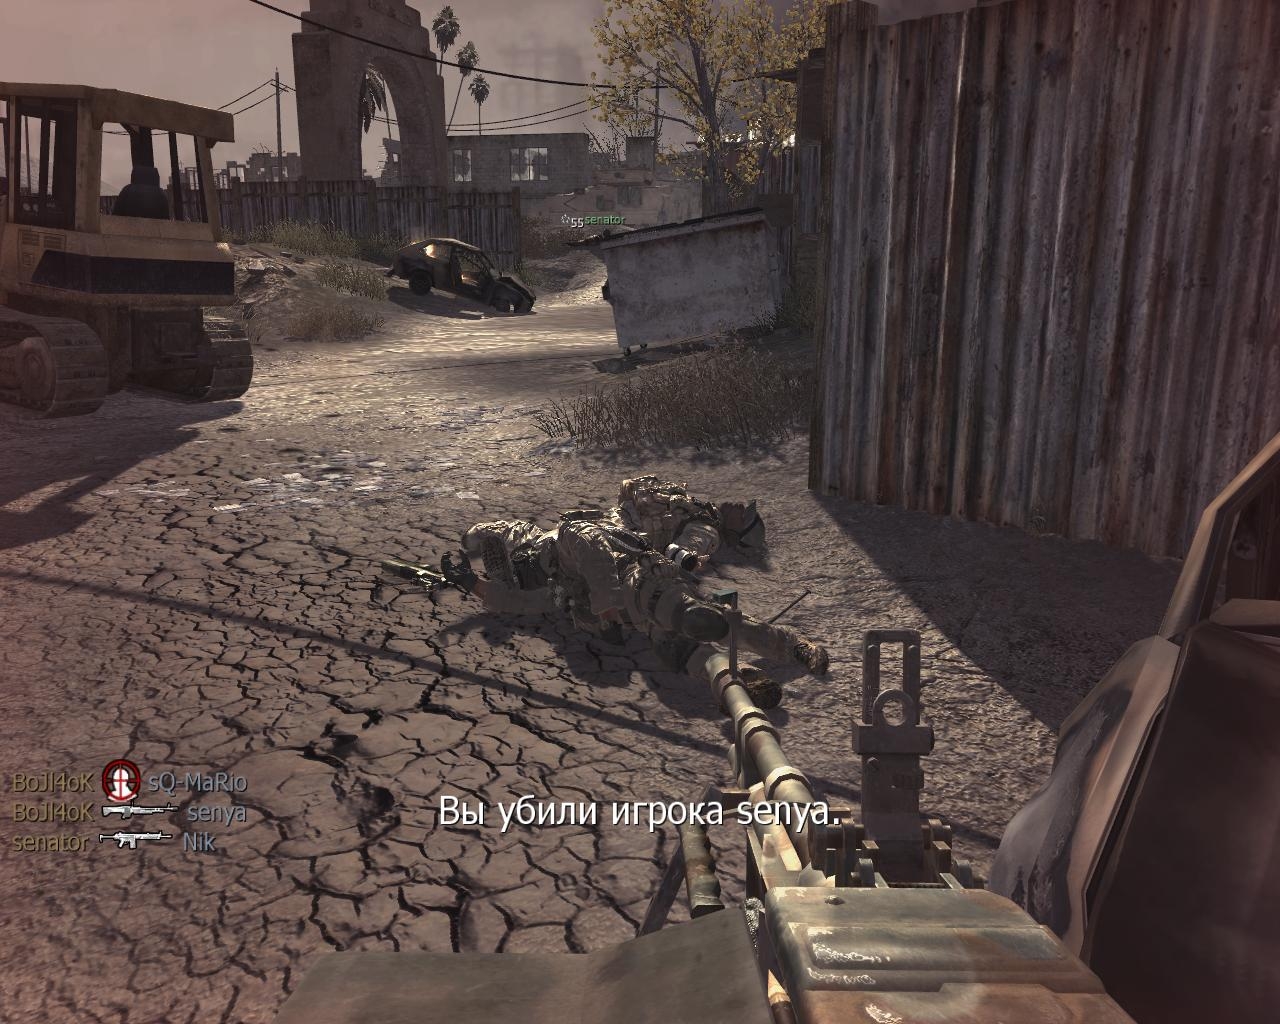 Игра кол оф дьюти 4. Call of Duty скрины из игры. Call of Duty 4 Modern Warfare Скриншоты. Call of Duty: Modern Warfare 4 скрины из игры. Снимки из игры Call of Duty 4.